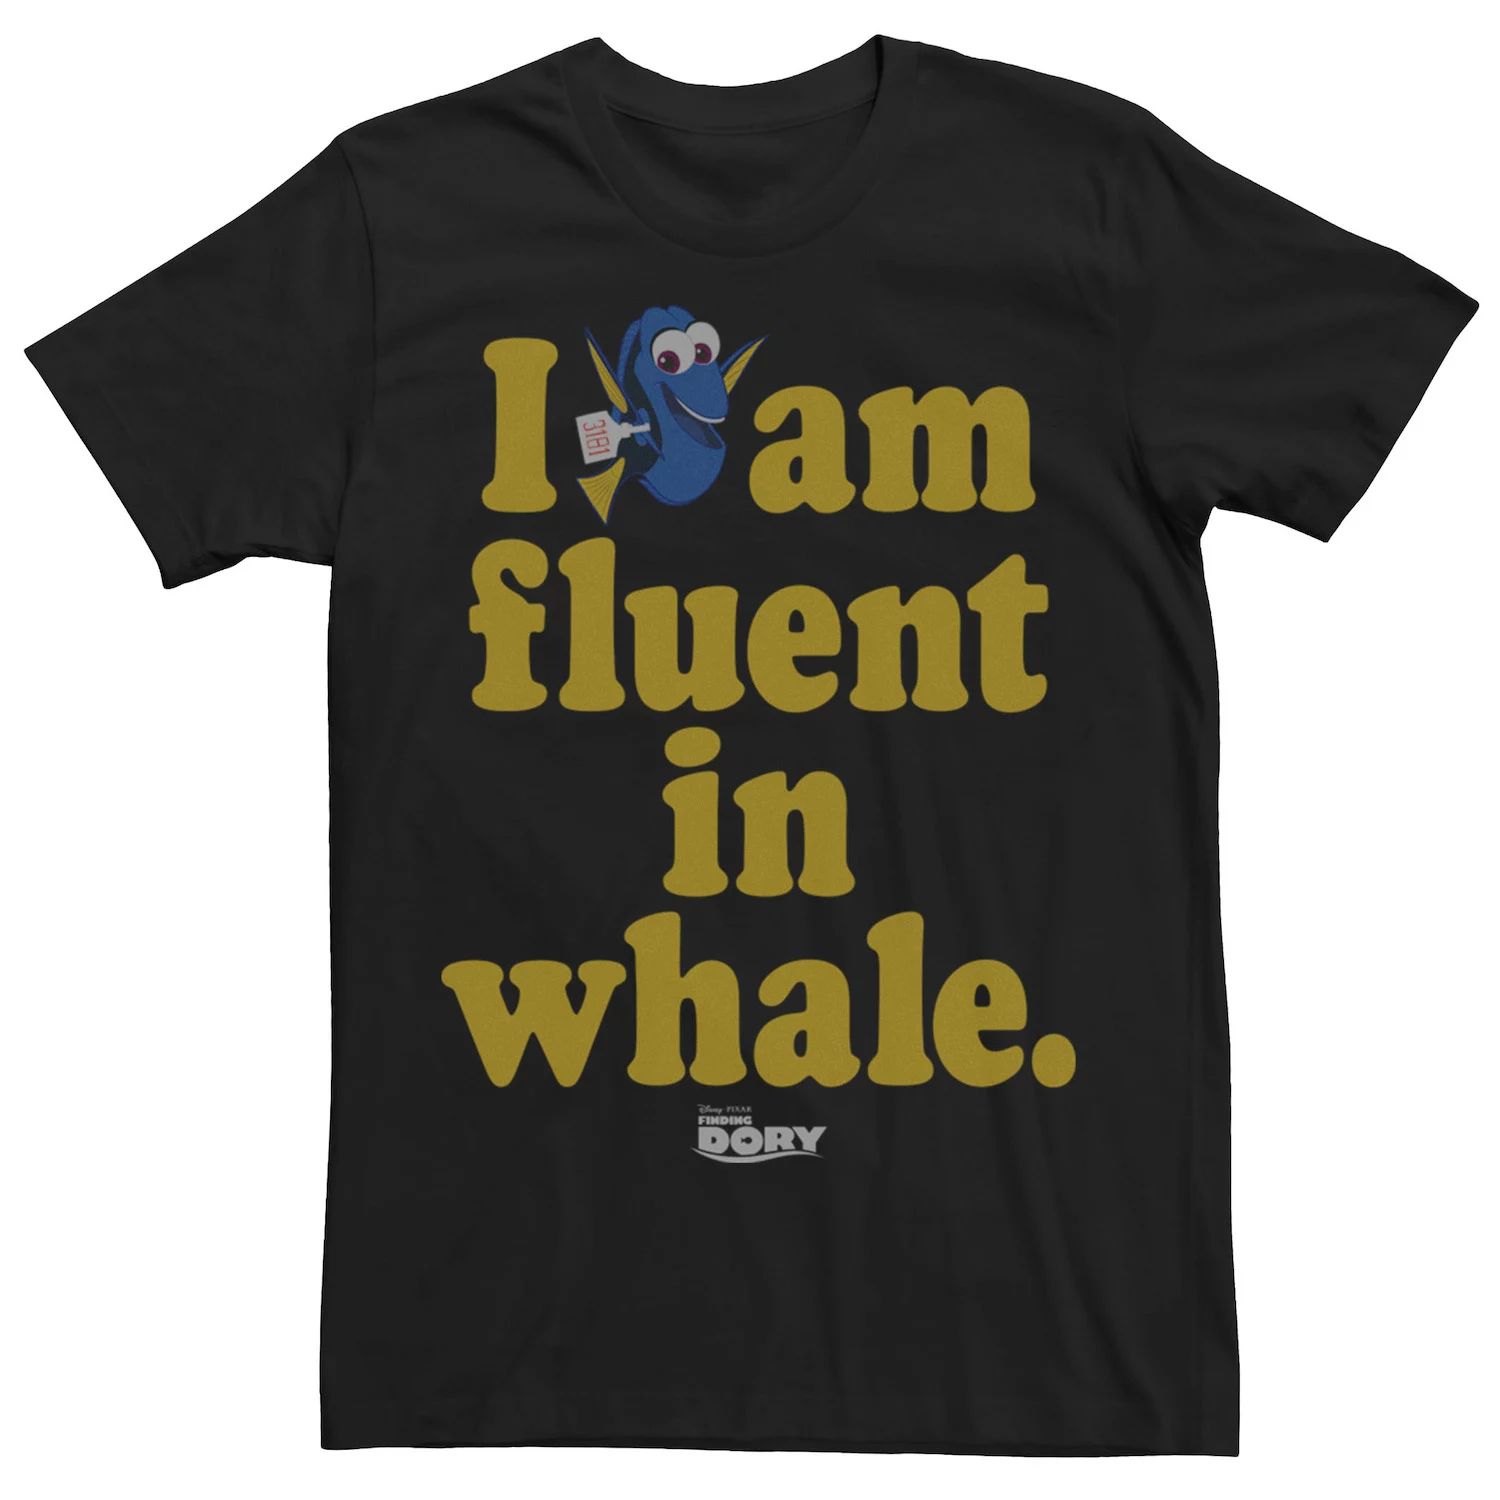 Мужская футболка Finding Dory Fluent в форме кита Disney / Pixar мужская футболка finding dory hank ok с crazy tee disney pixar